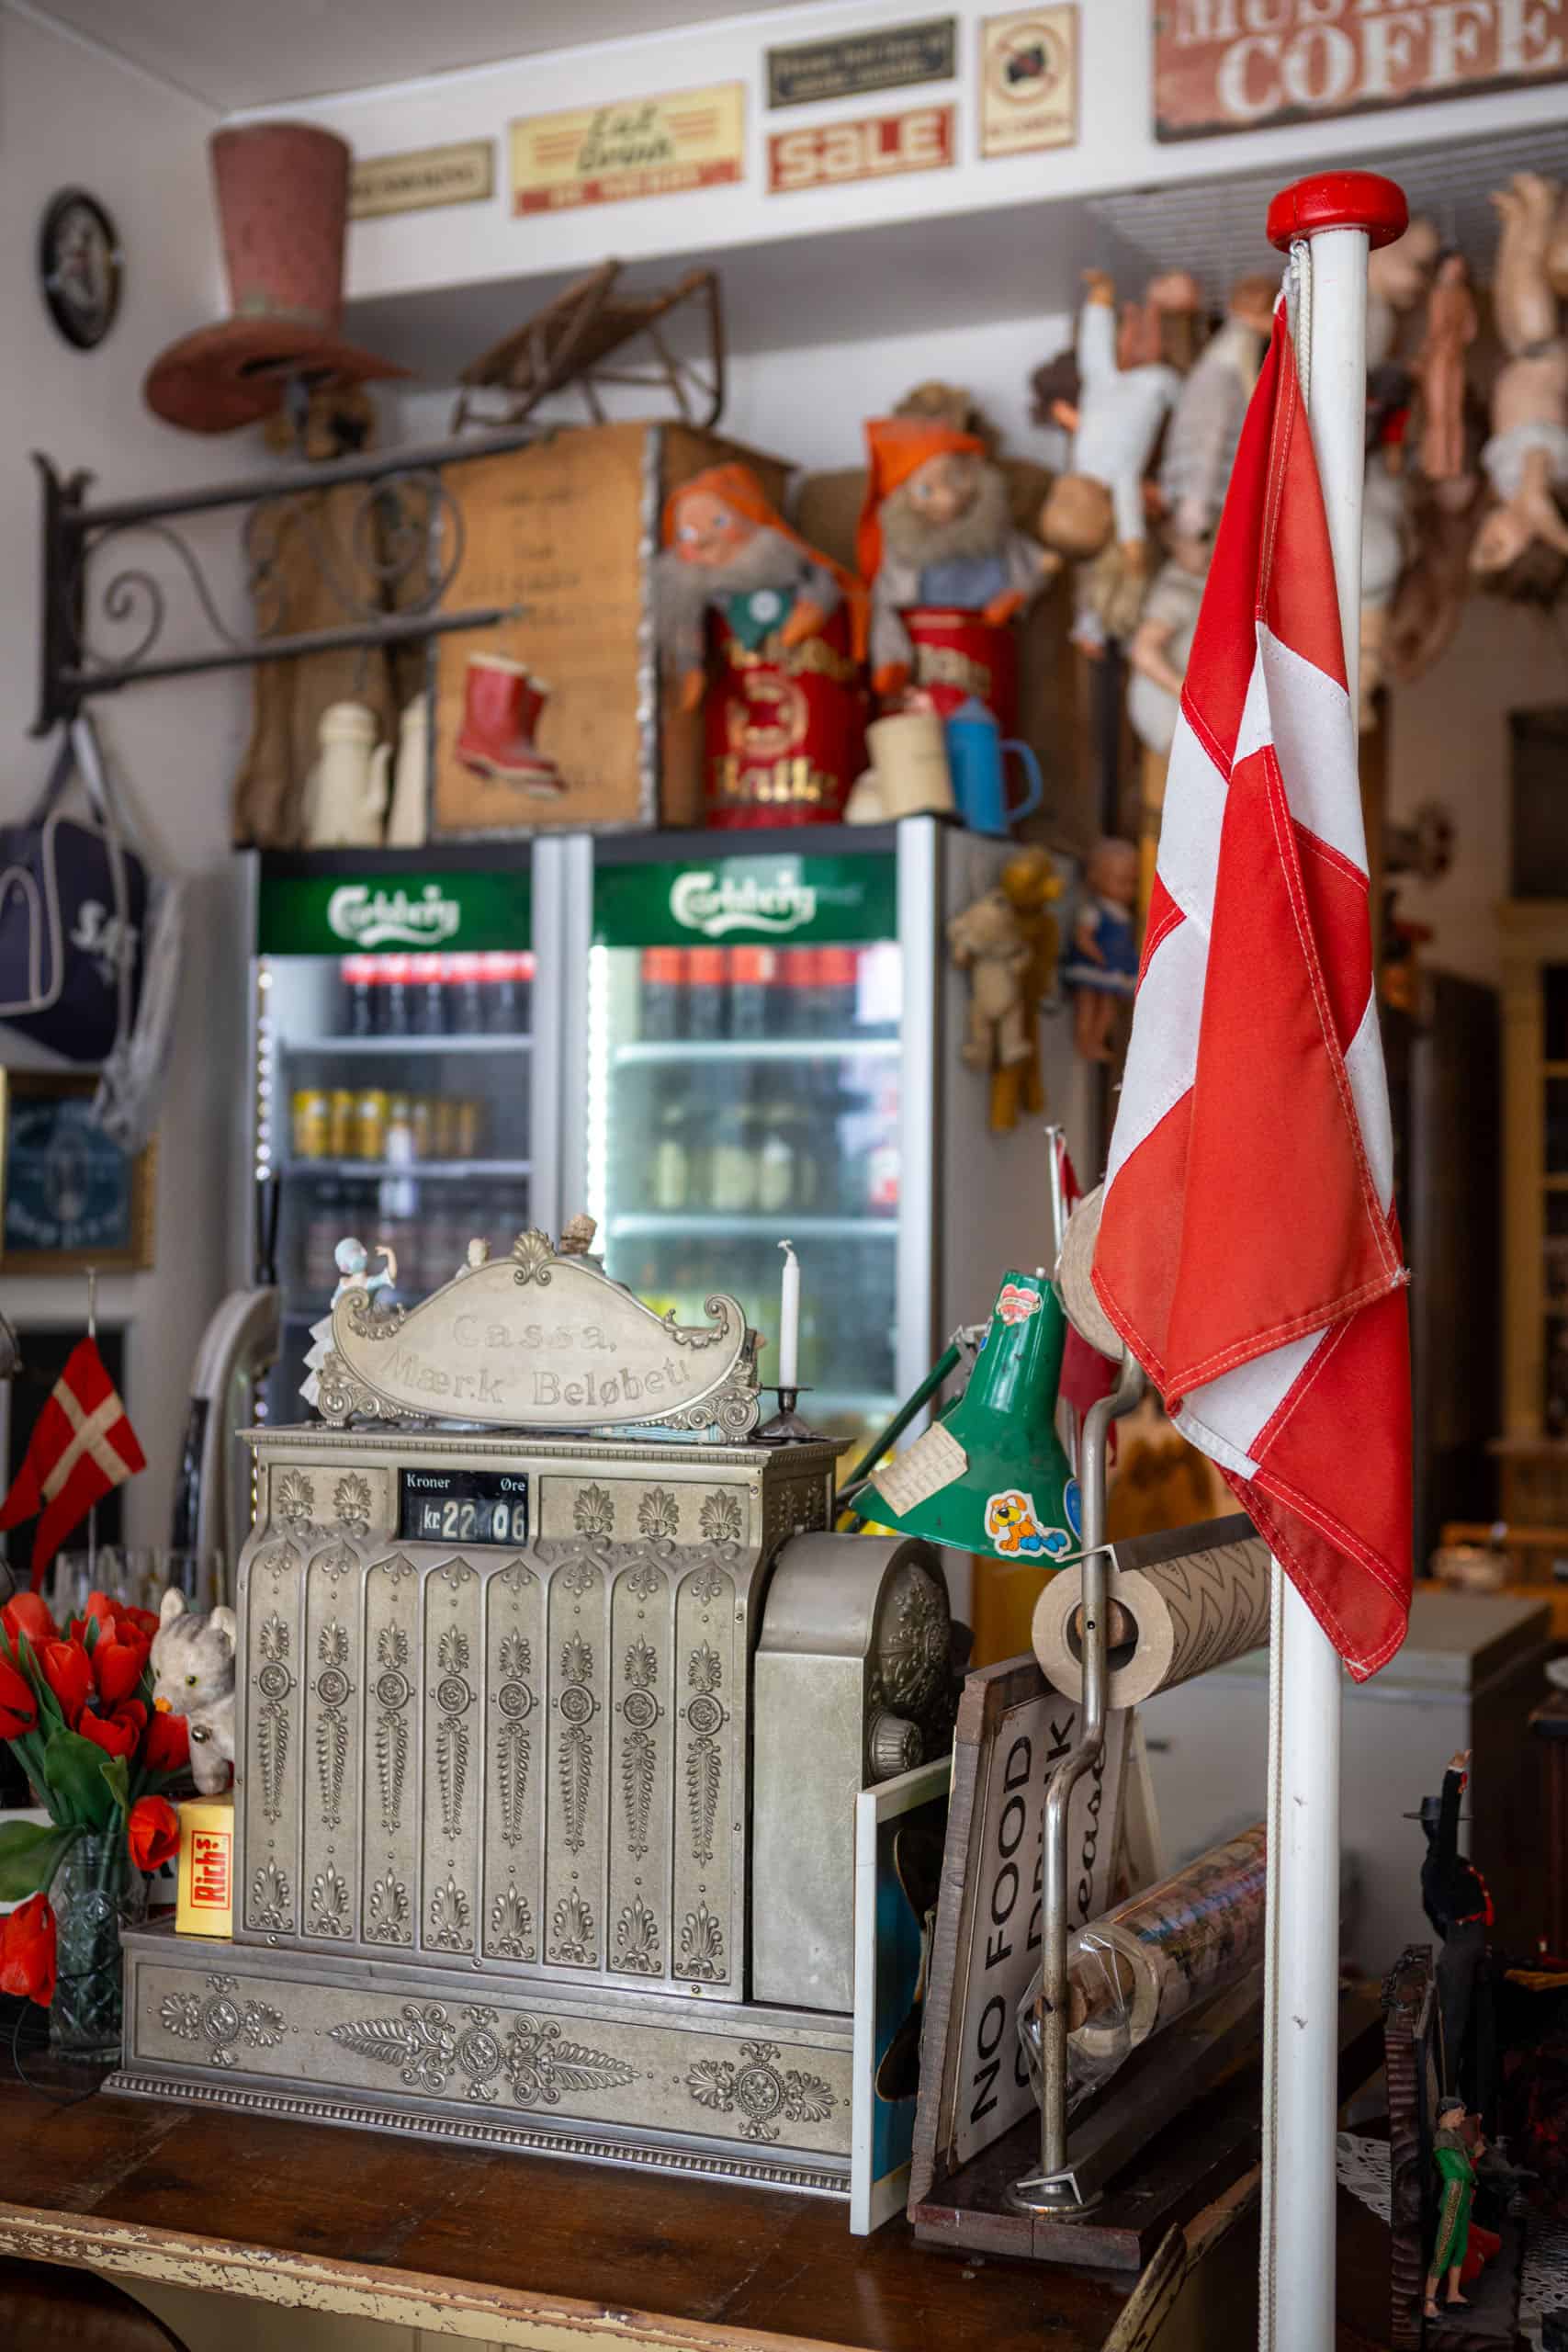 Oude kassa, drankenkoelkast en Canadese vlag: onderdelen van het kleurrijke interieur van Mormors in Kopenhagen